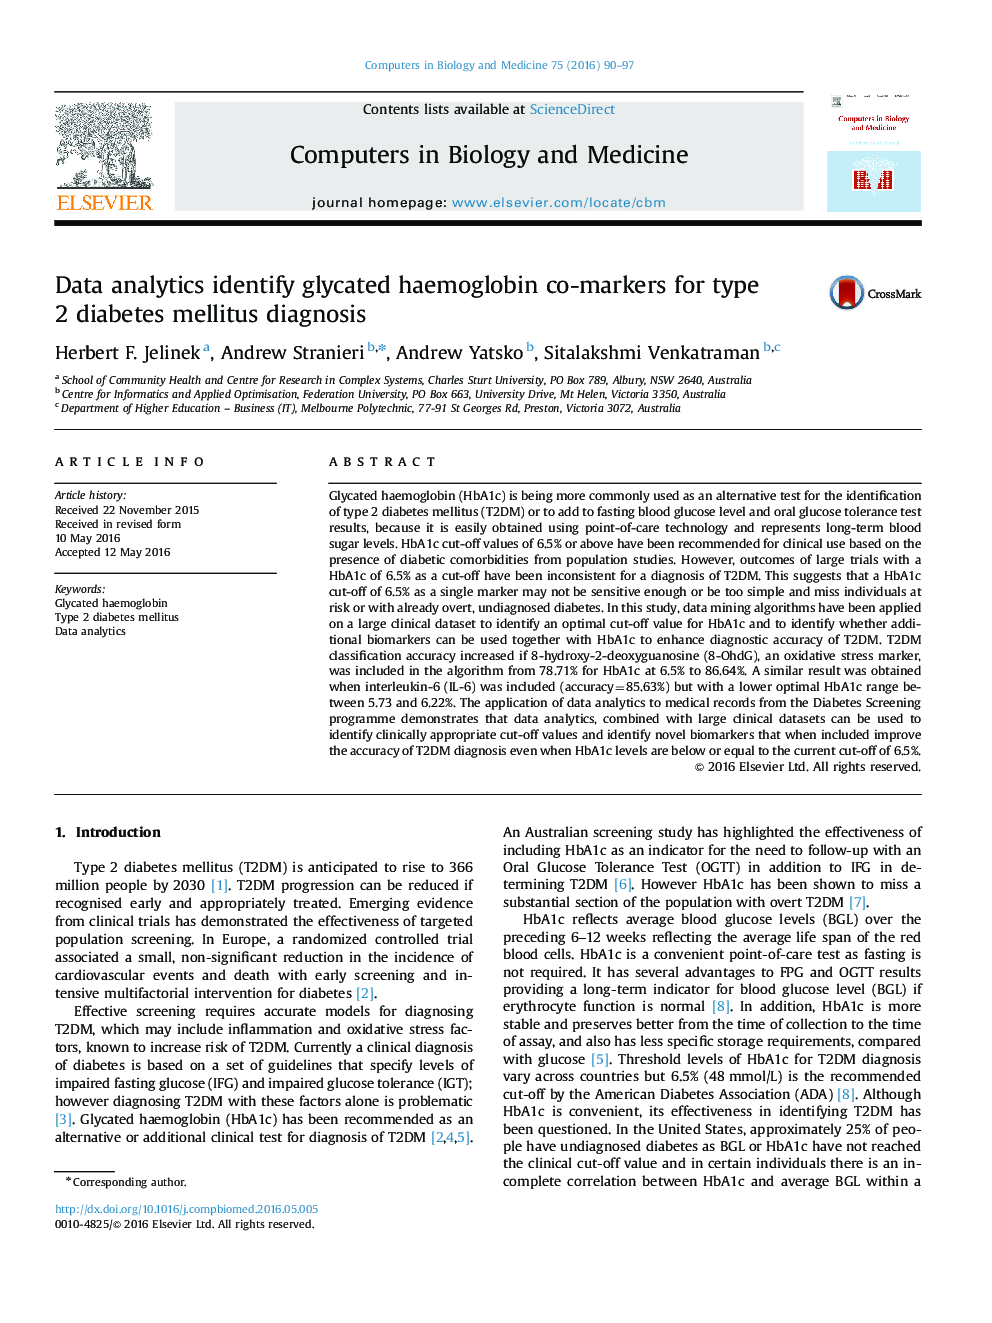 نشانگر مشترک هموگلوبین گلیکوزیله شناسایی تحلیل داده برای تشخیص قند دیابت نوع 2 